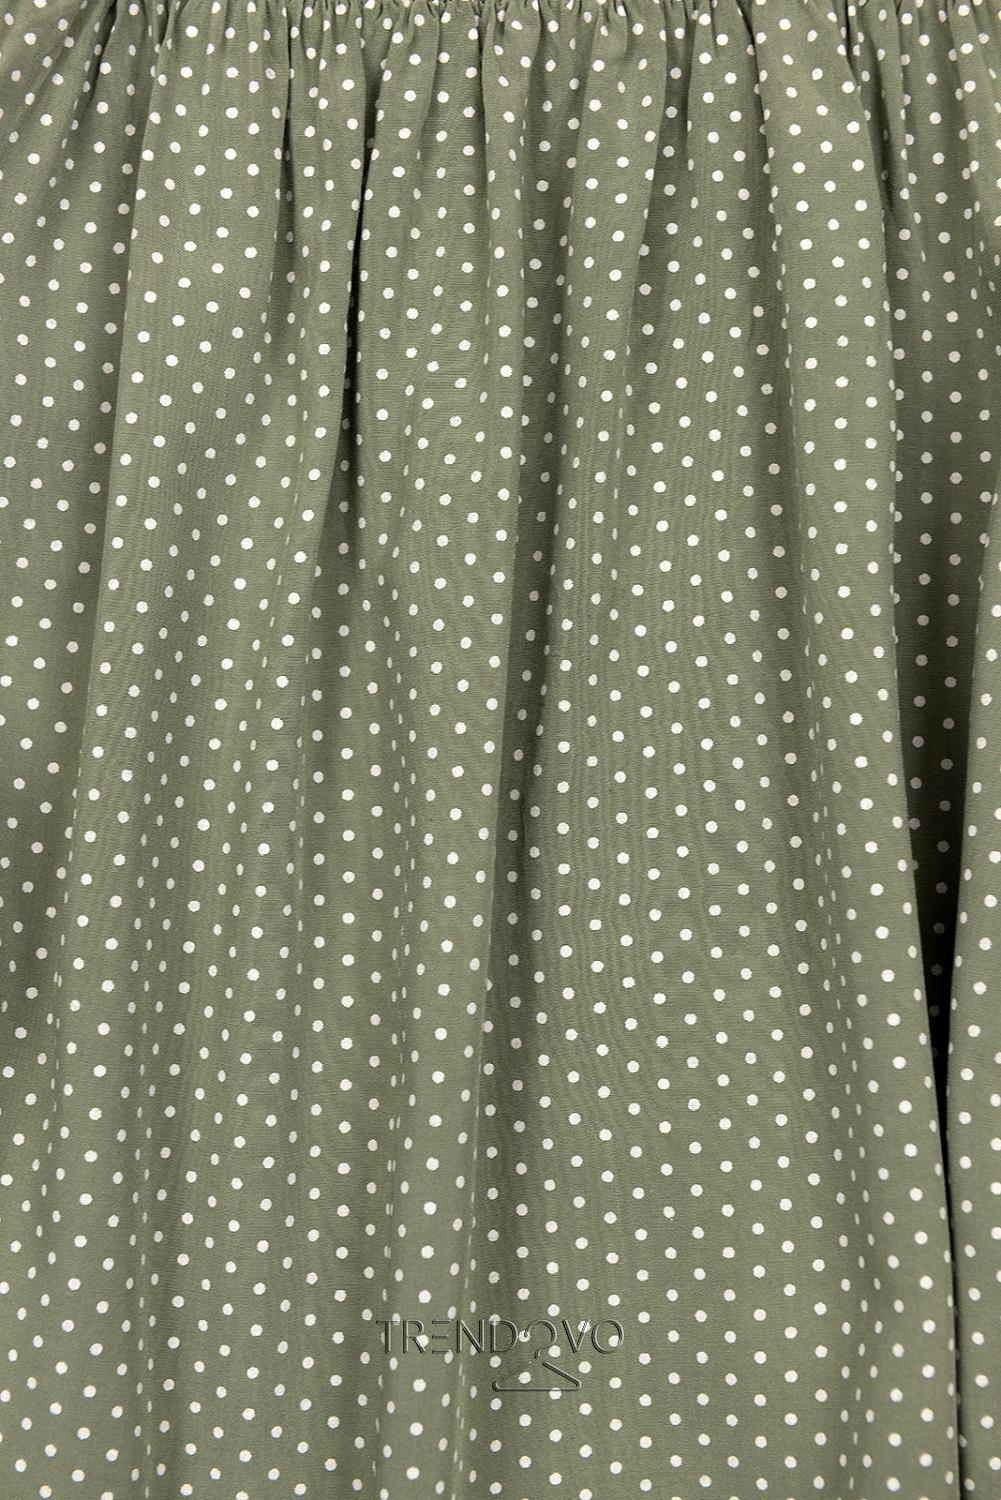 Khaki retro bodkované šaty s mašľou